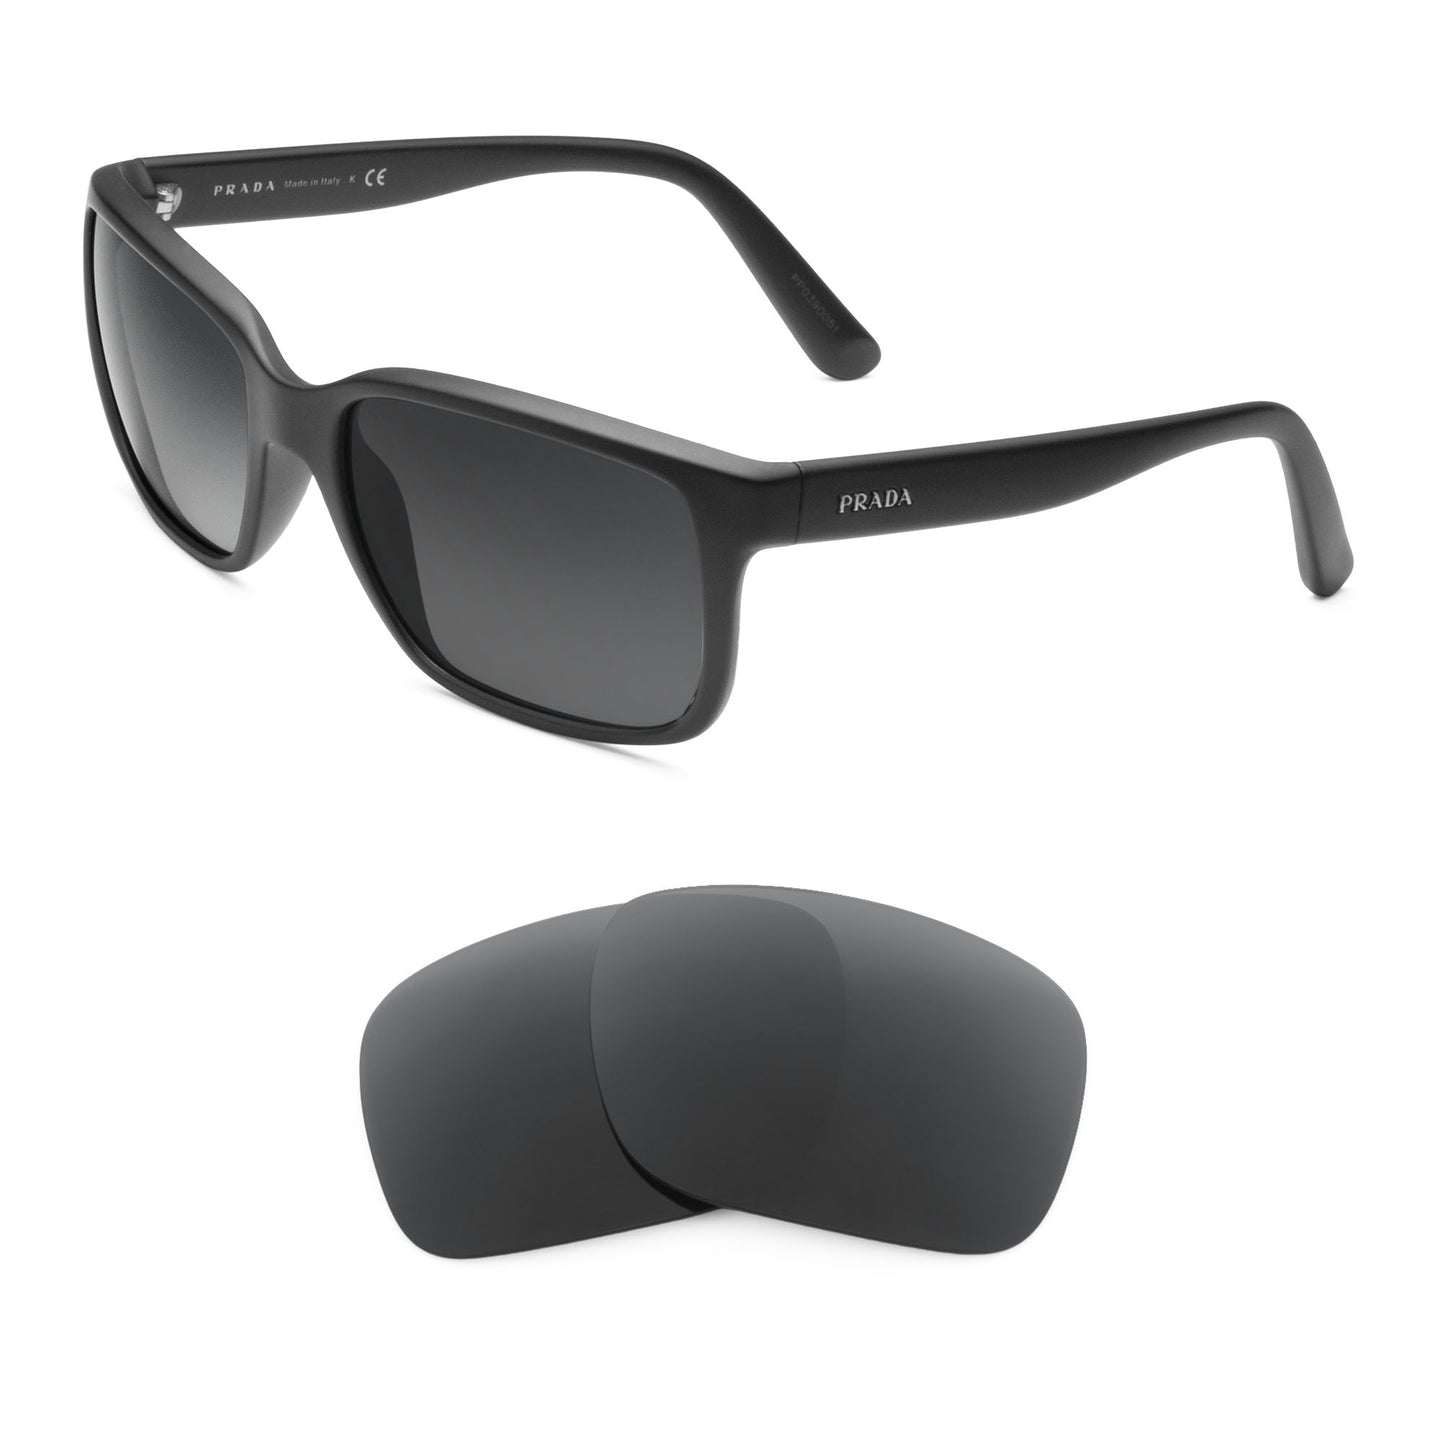 Prada SPR 21R sunglasses with replacement lenses